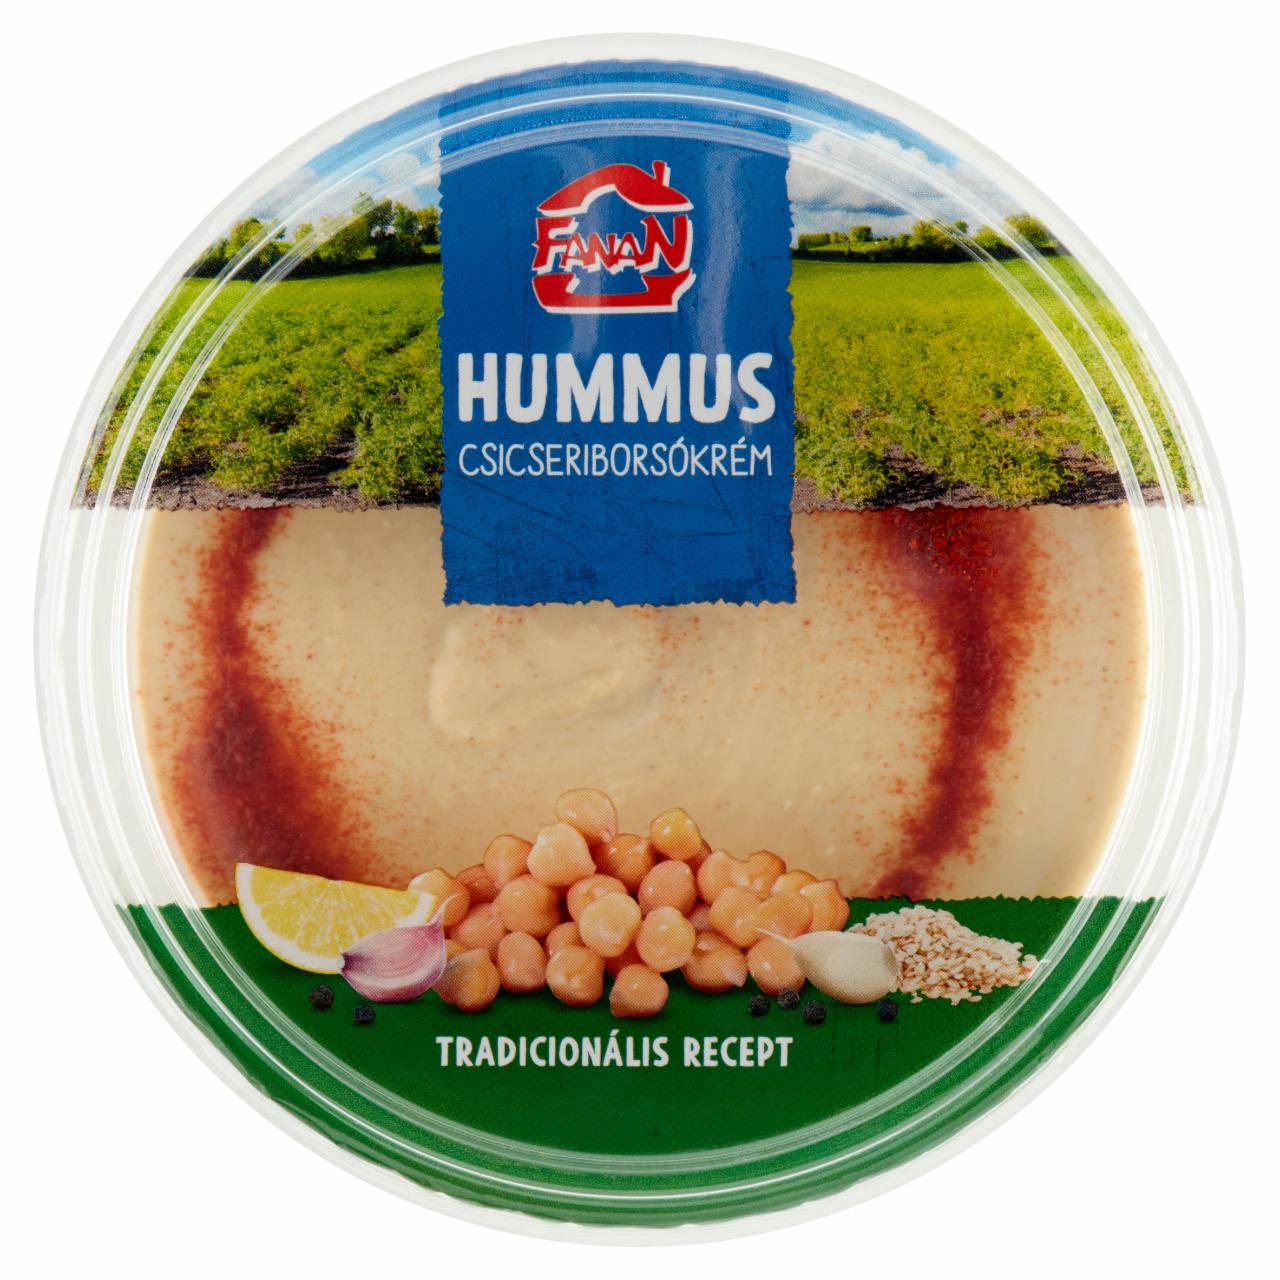 Képek - Hummus natúr csicseriborsó krém Fanan